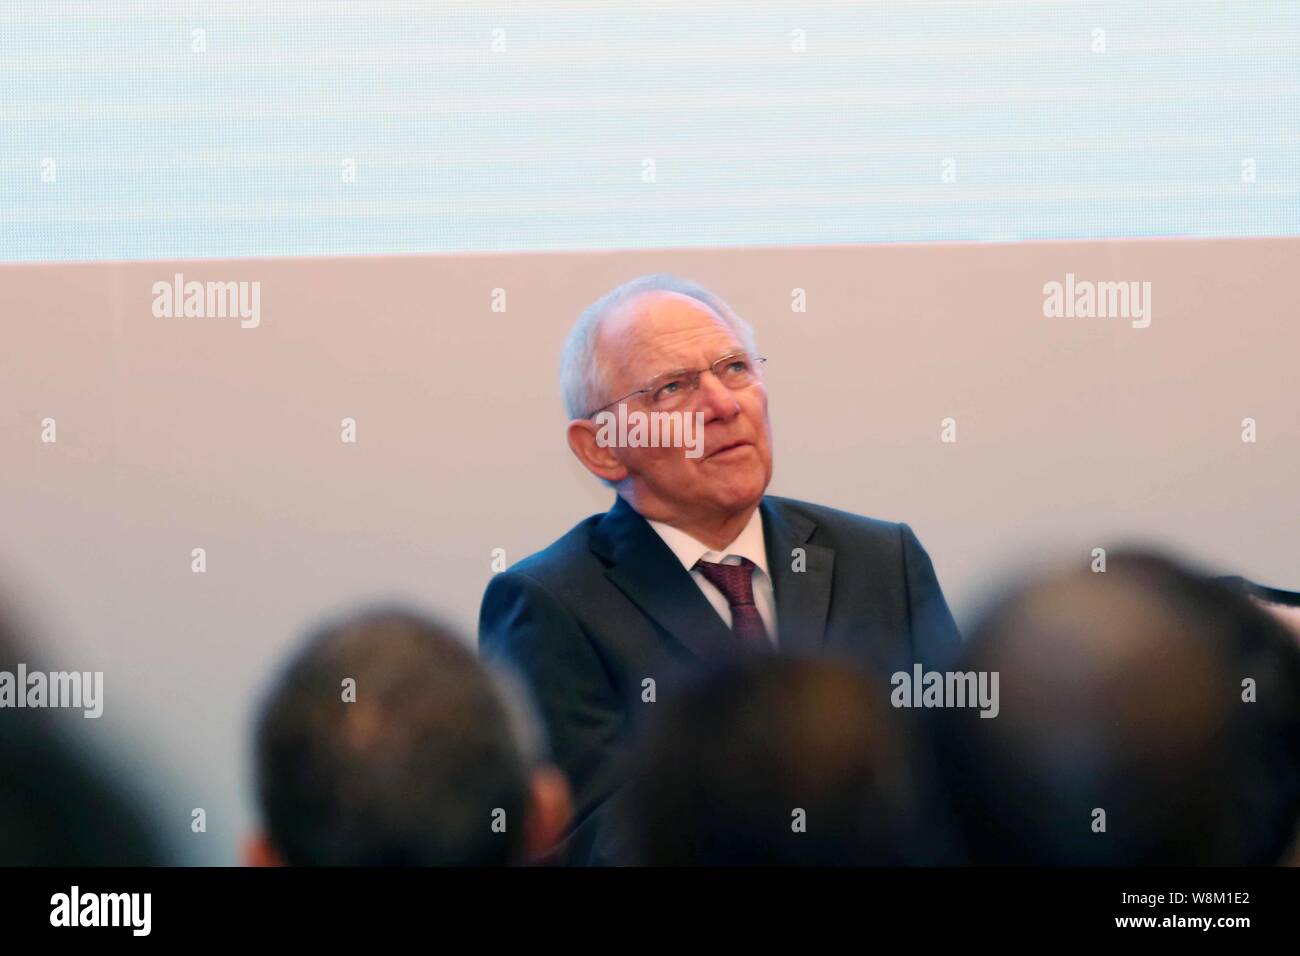 Der deutsche Finanzminister Wolfgang Schaeuble spricht während einer Sitzung der 2016 G20-Finanzminister und -Zentralbankpräsidenten Treffen in der Pudong Stockfoto